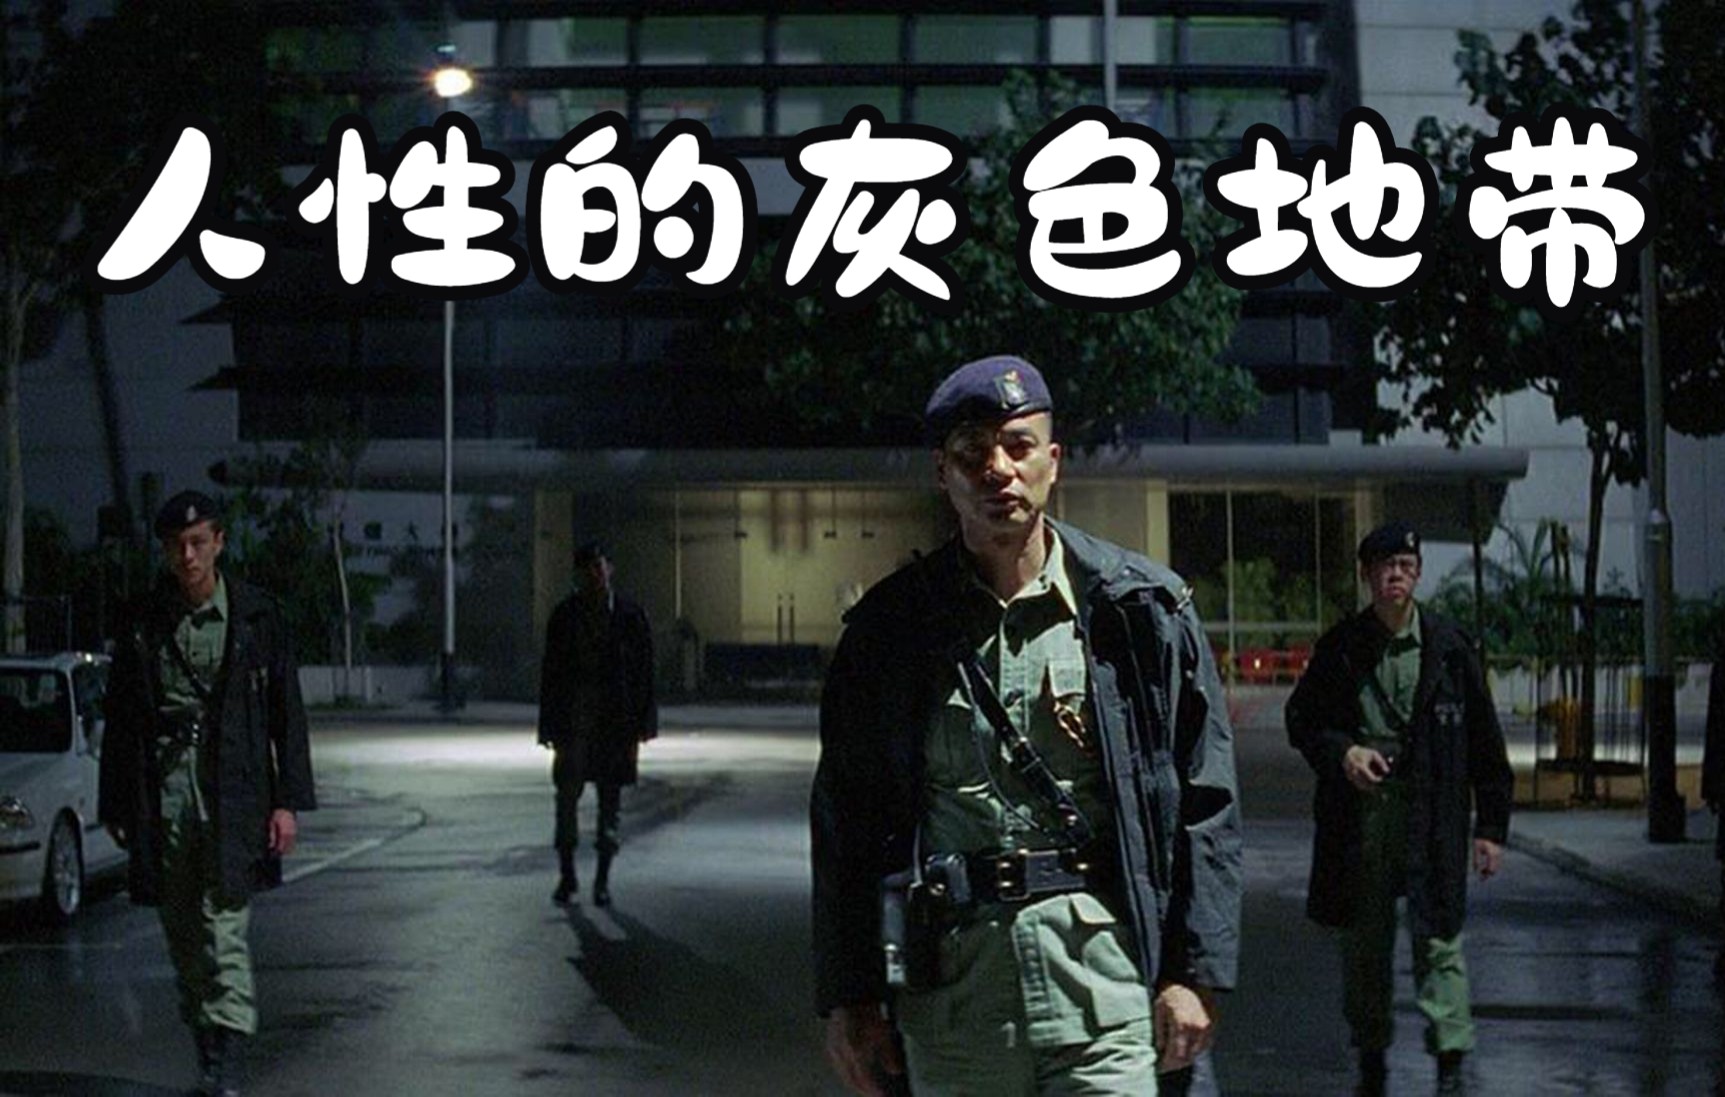 杜琪峰《机动部队ptu》,探索人性灰色地带的文艺警匪片